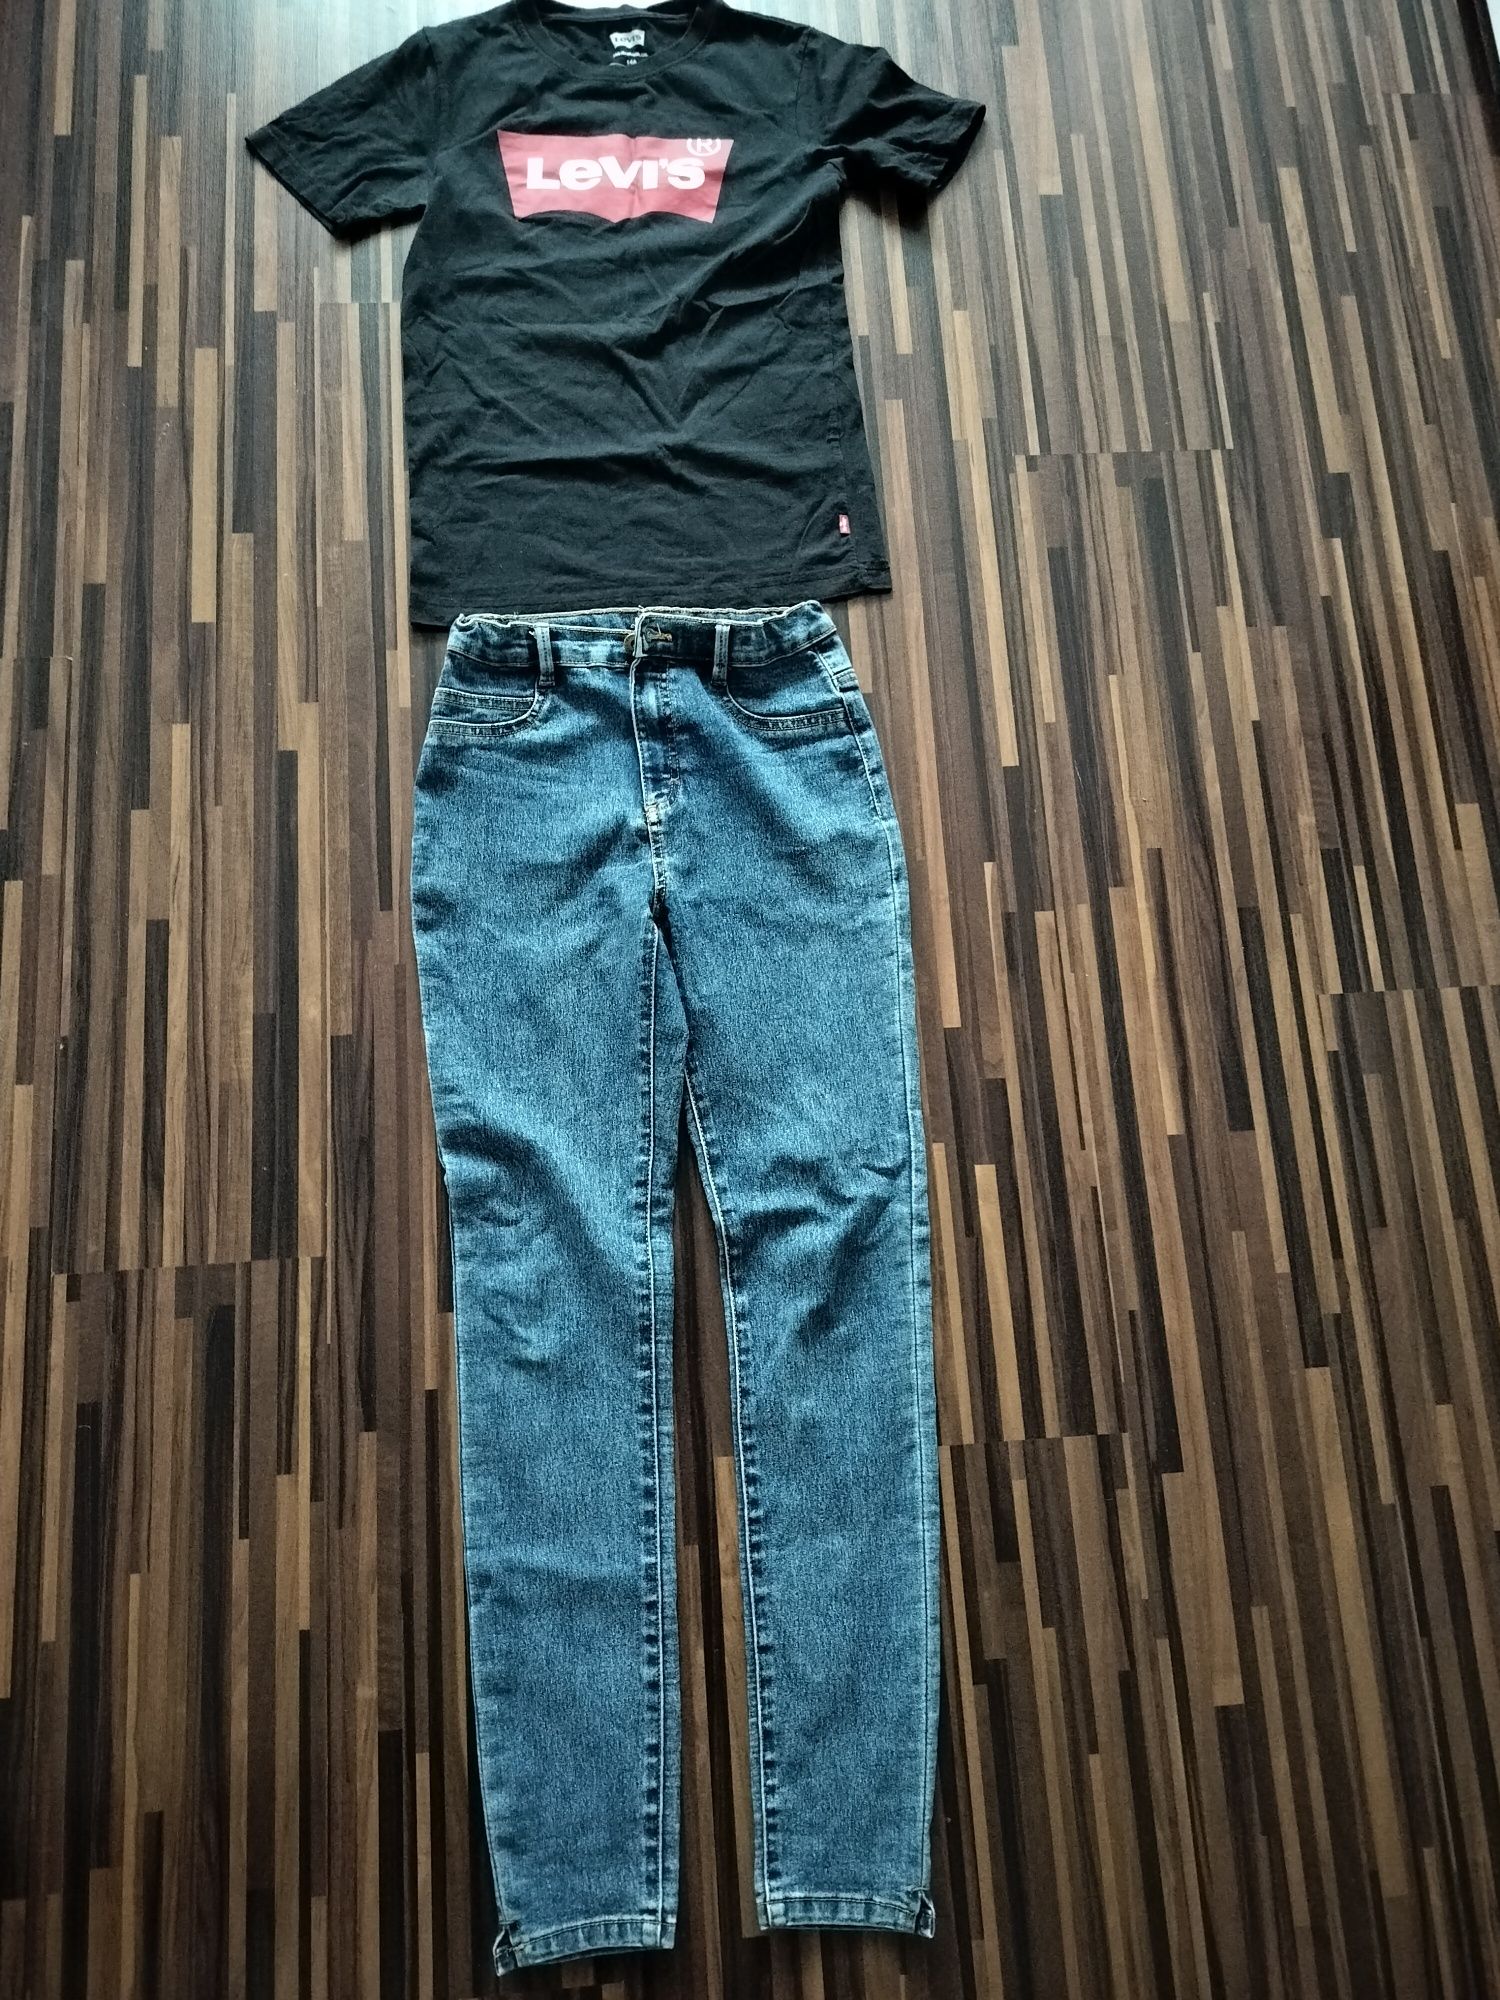 Spodnie Reserved i t-shirt Levi's roz 164cm dla dziewczynki